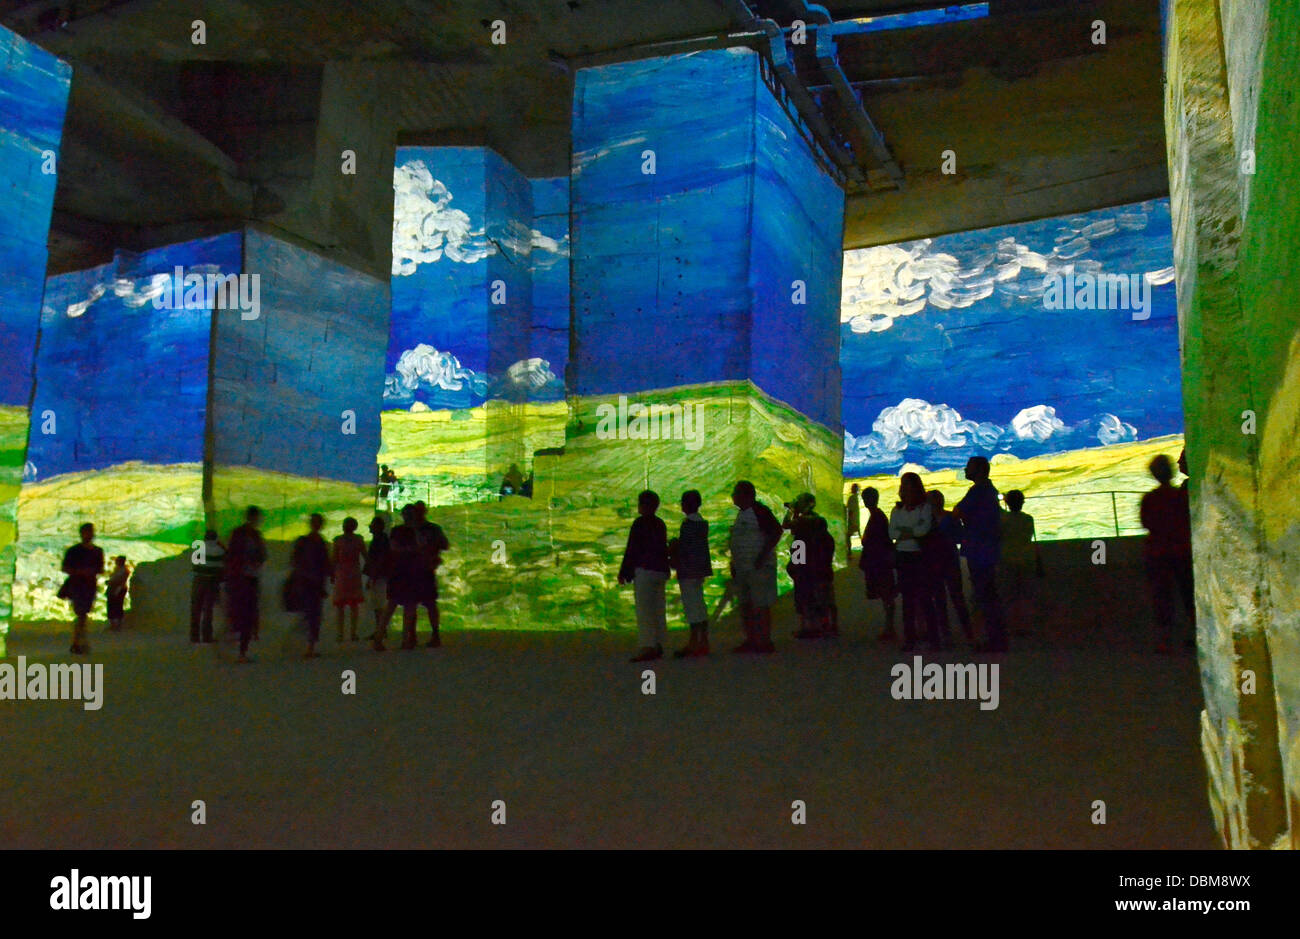 Les Baux, Carrière de Lumière, audiovisual shows, pictures by Vincent van  Gogh and Paul Gauguin Stock Photo - Alamy